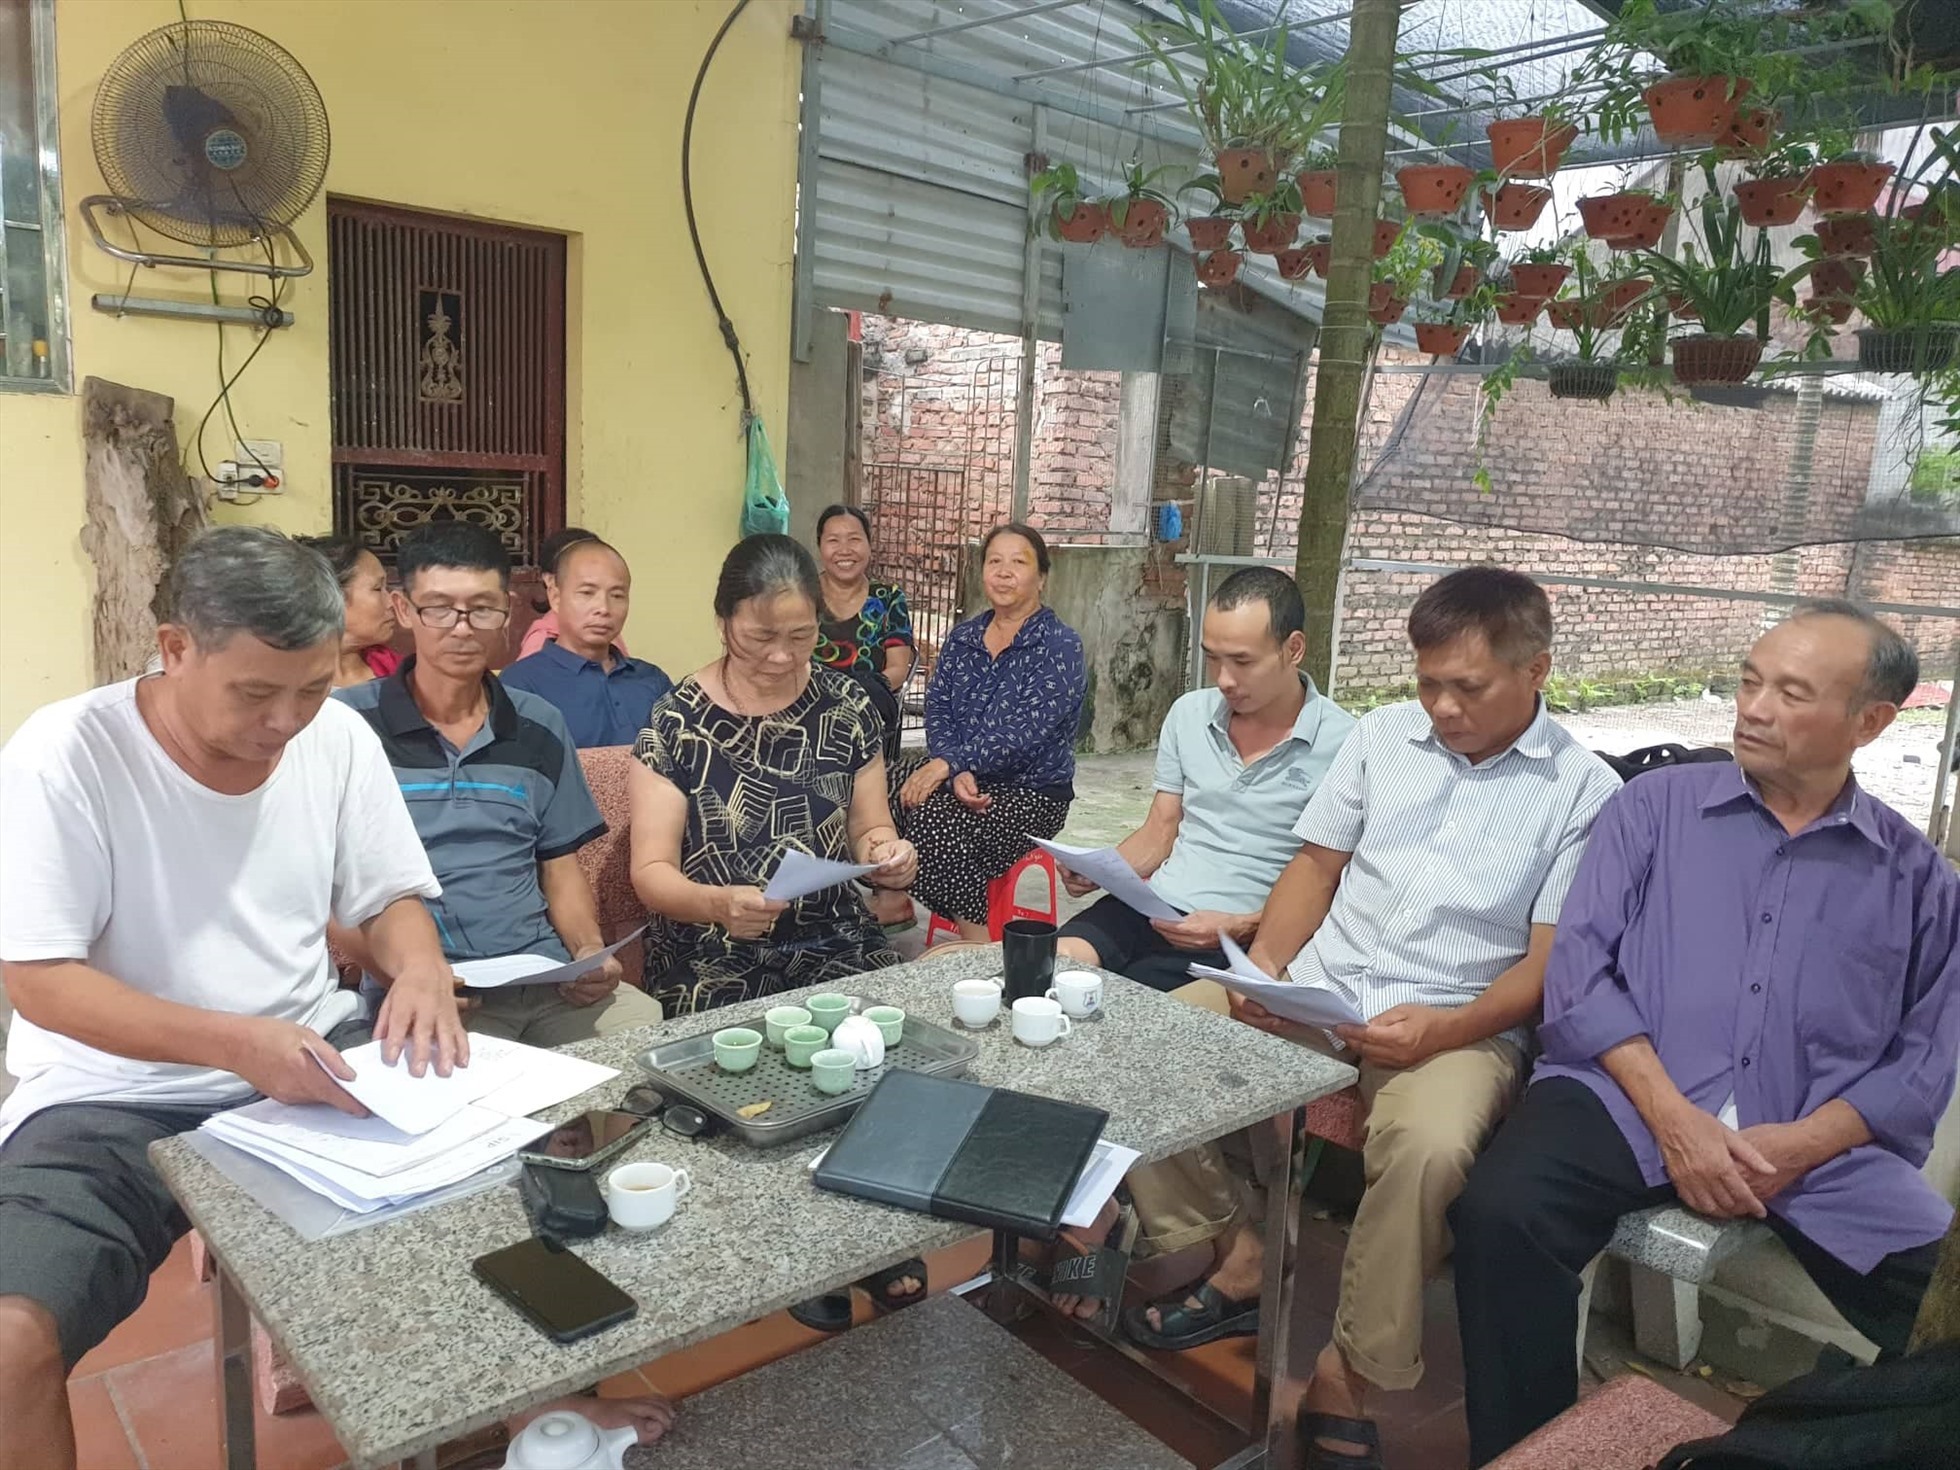 Nhiều hộ dân ở thôn Trác Bút chưa đồng ý bàn giao mặt bằng cho dự án KCN Vsip 2. Ảnh: Trần Tuấn.